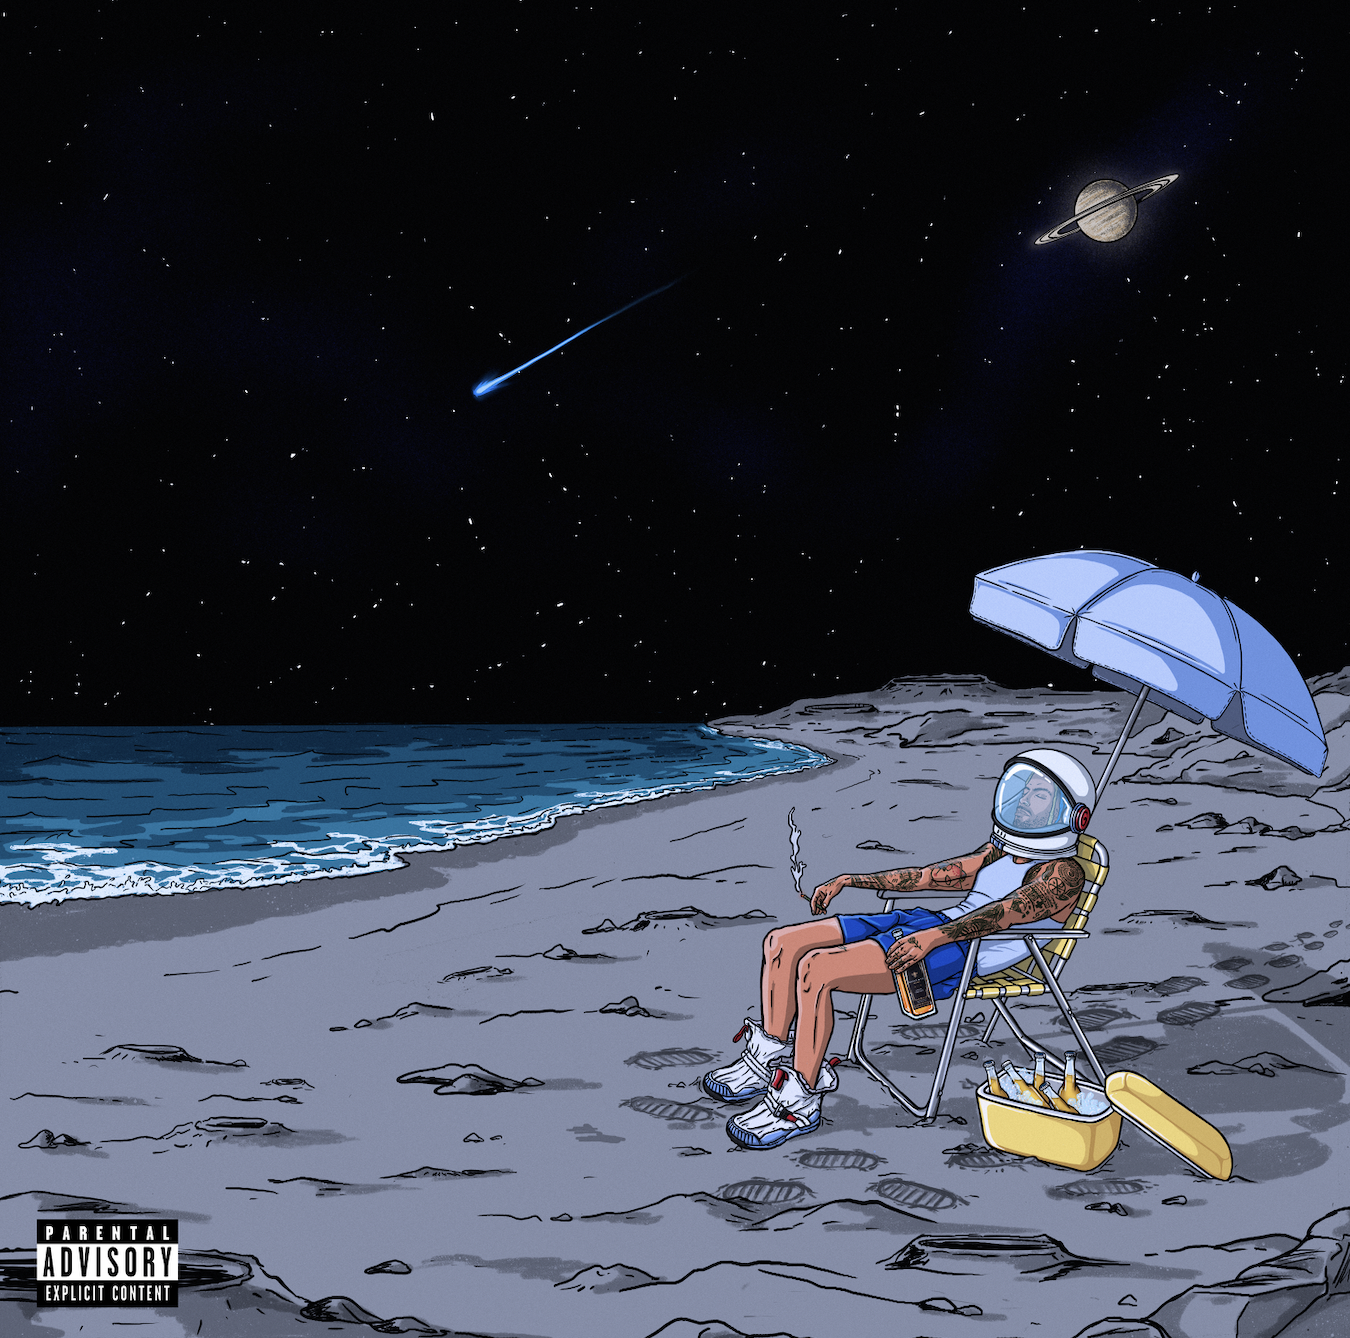 ¡Directo desde el espacio! Llega “Playa Saturno” el nuevo álbum de Rauw Alejandro